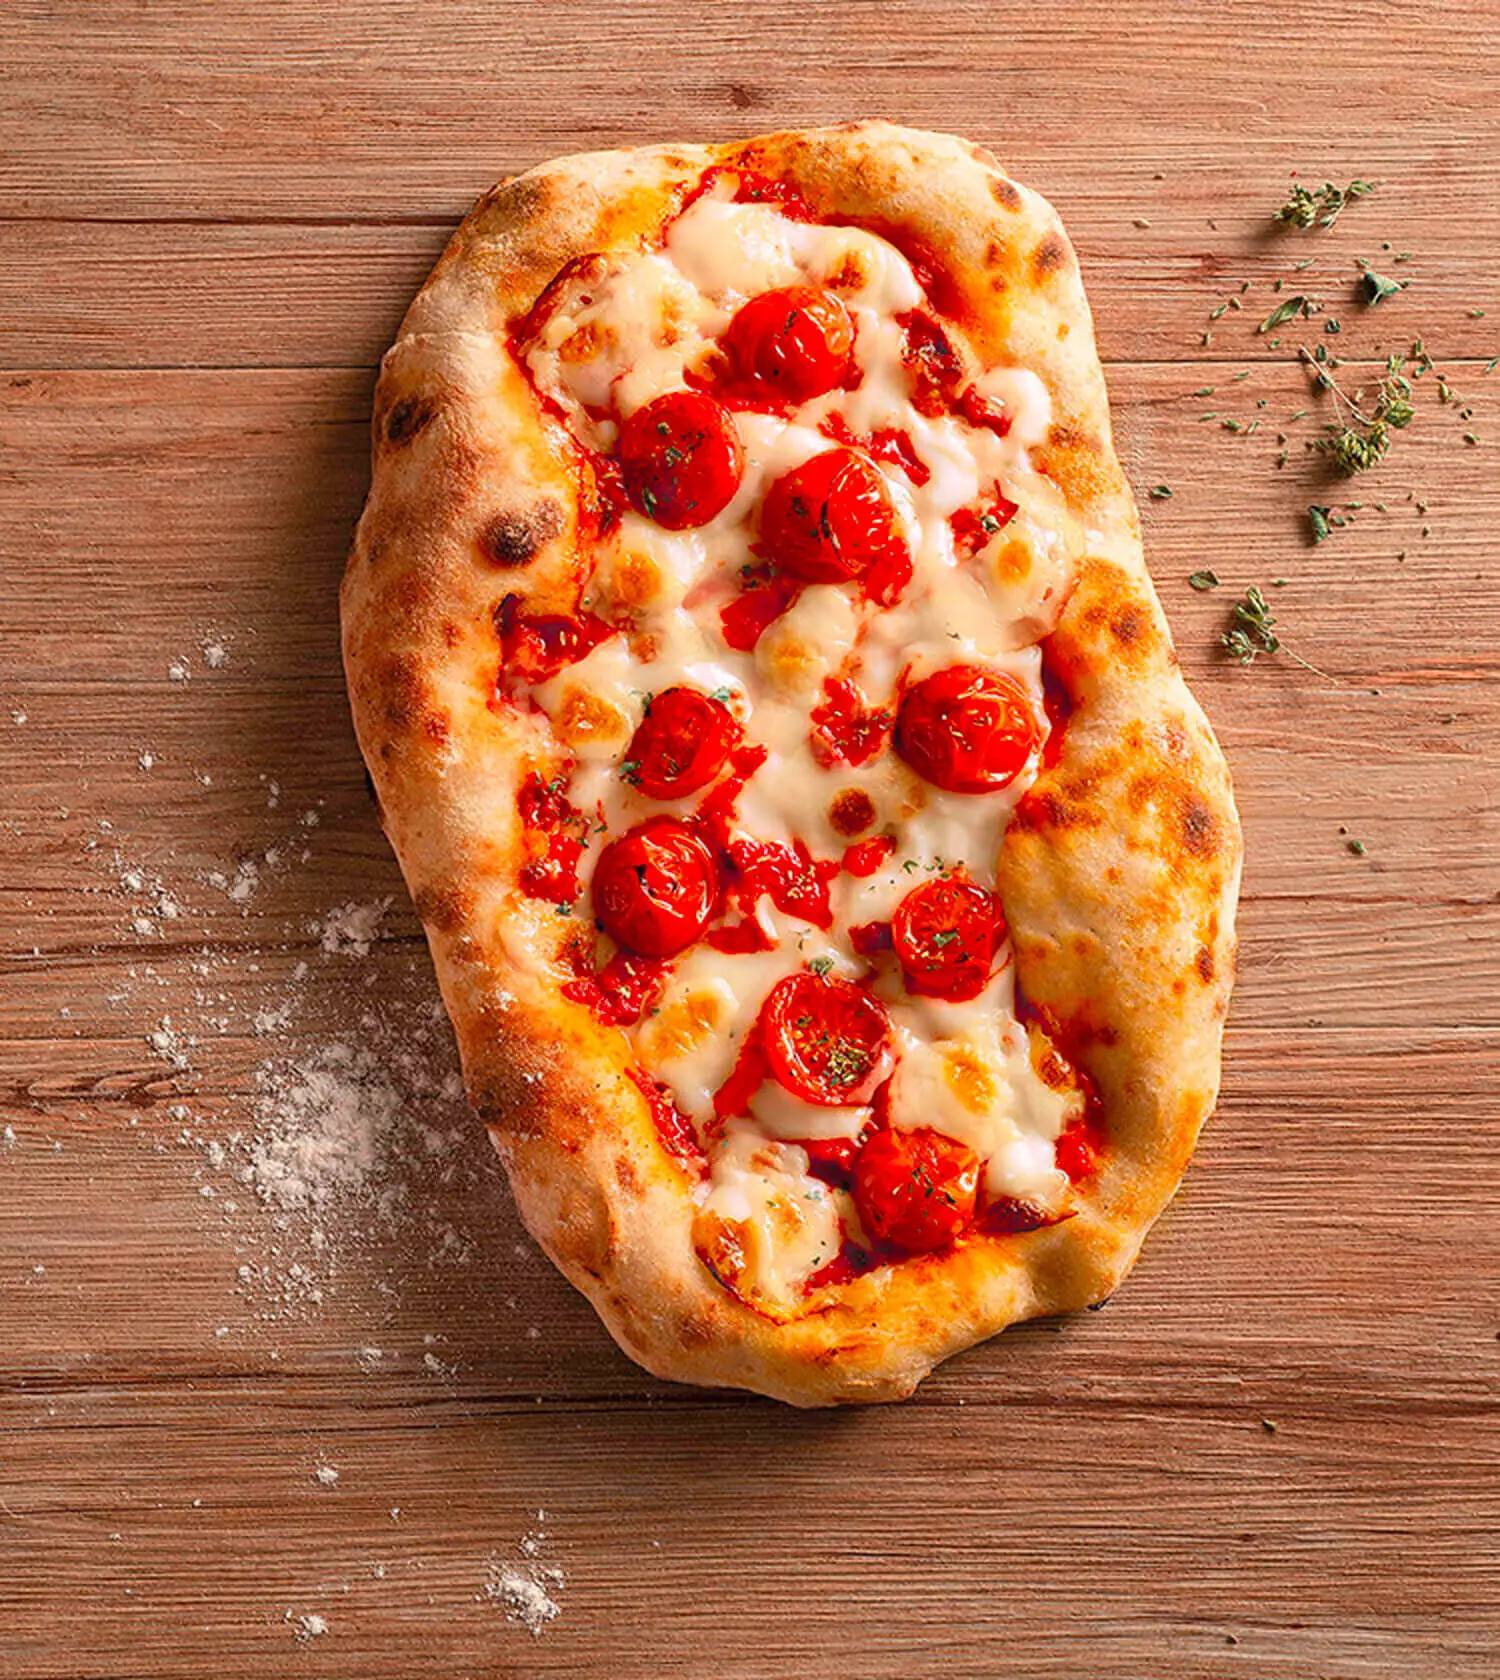 Pinsa with mozzarella and tomato